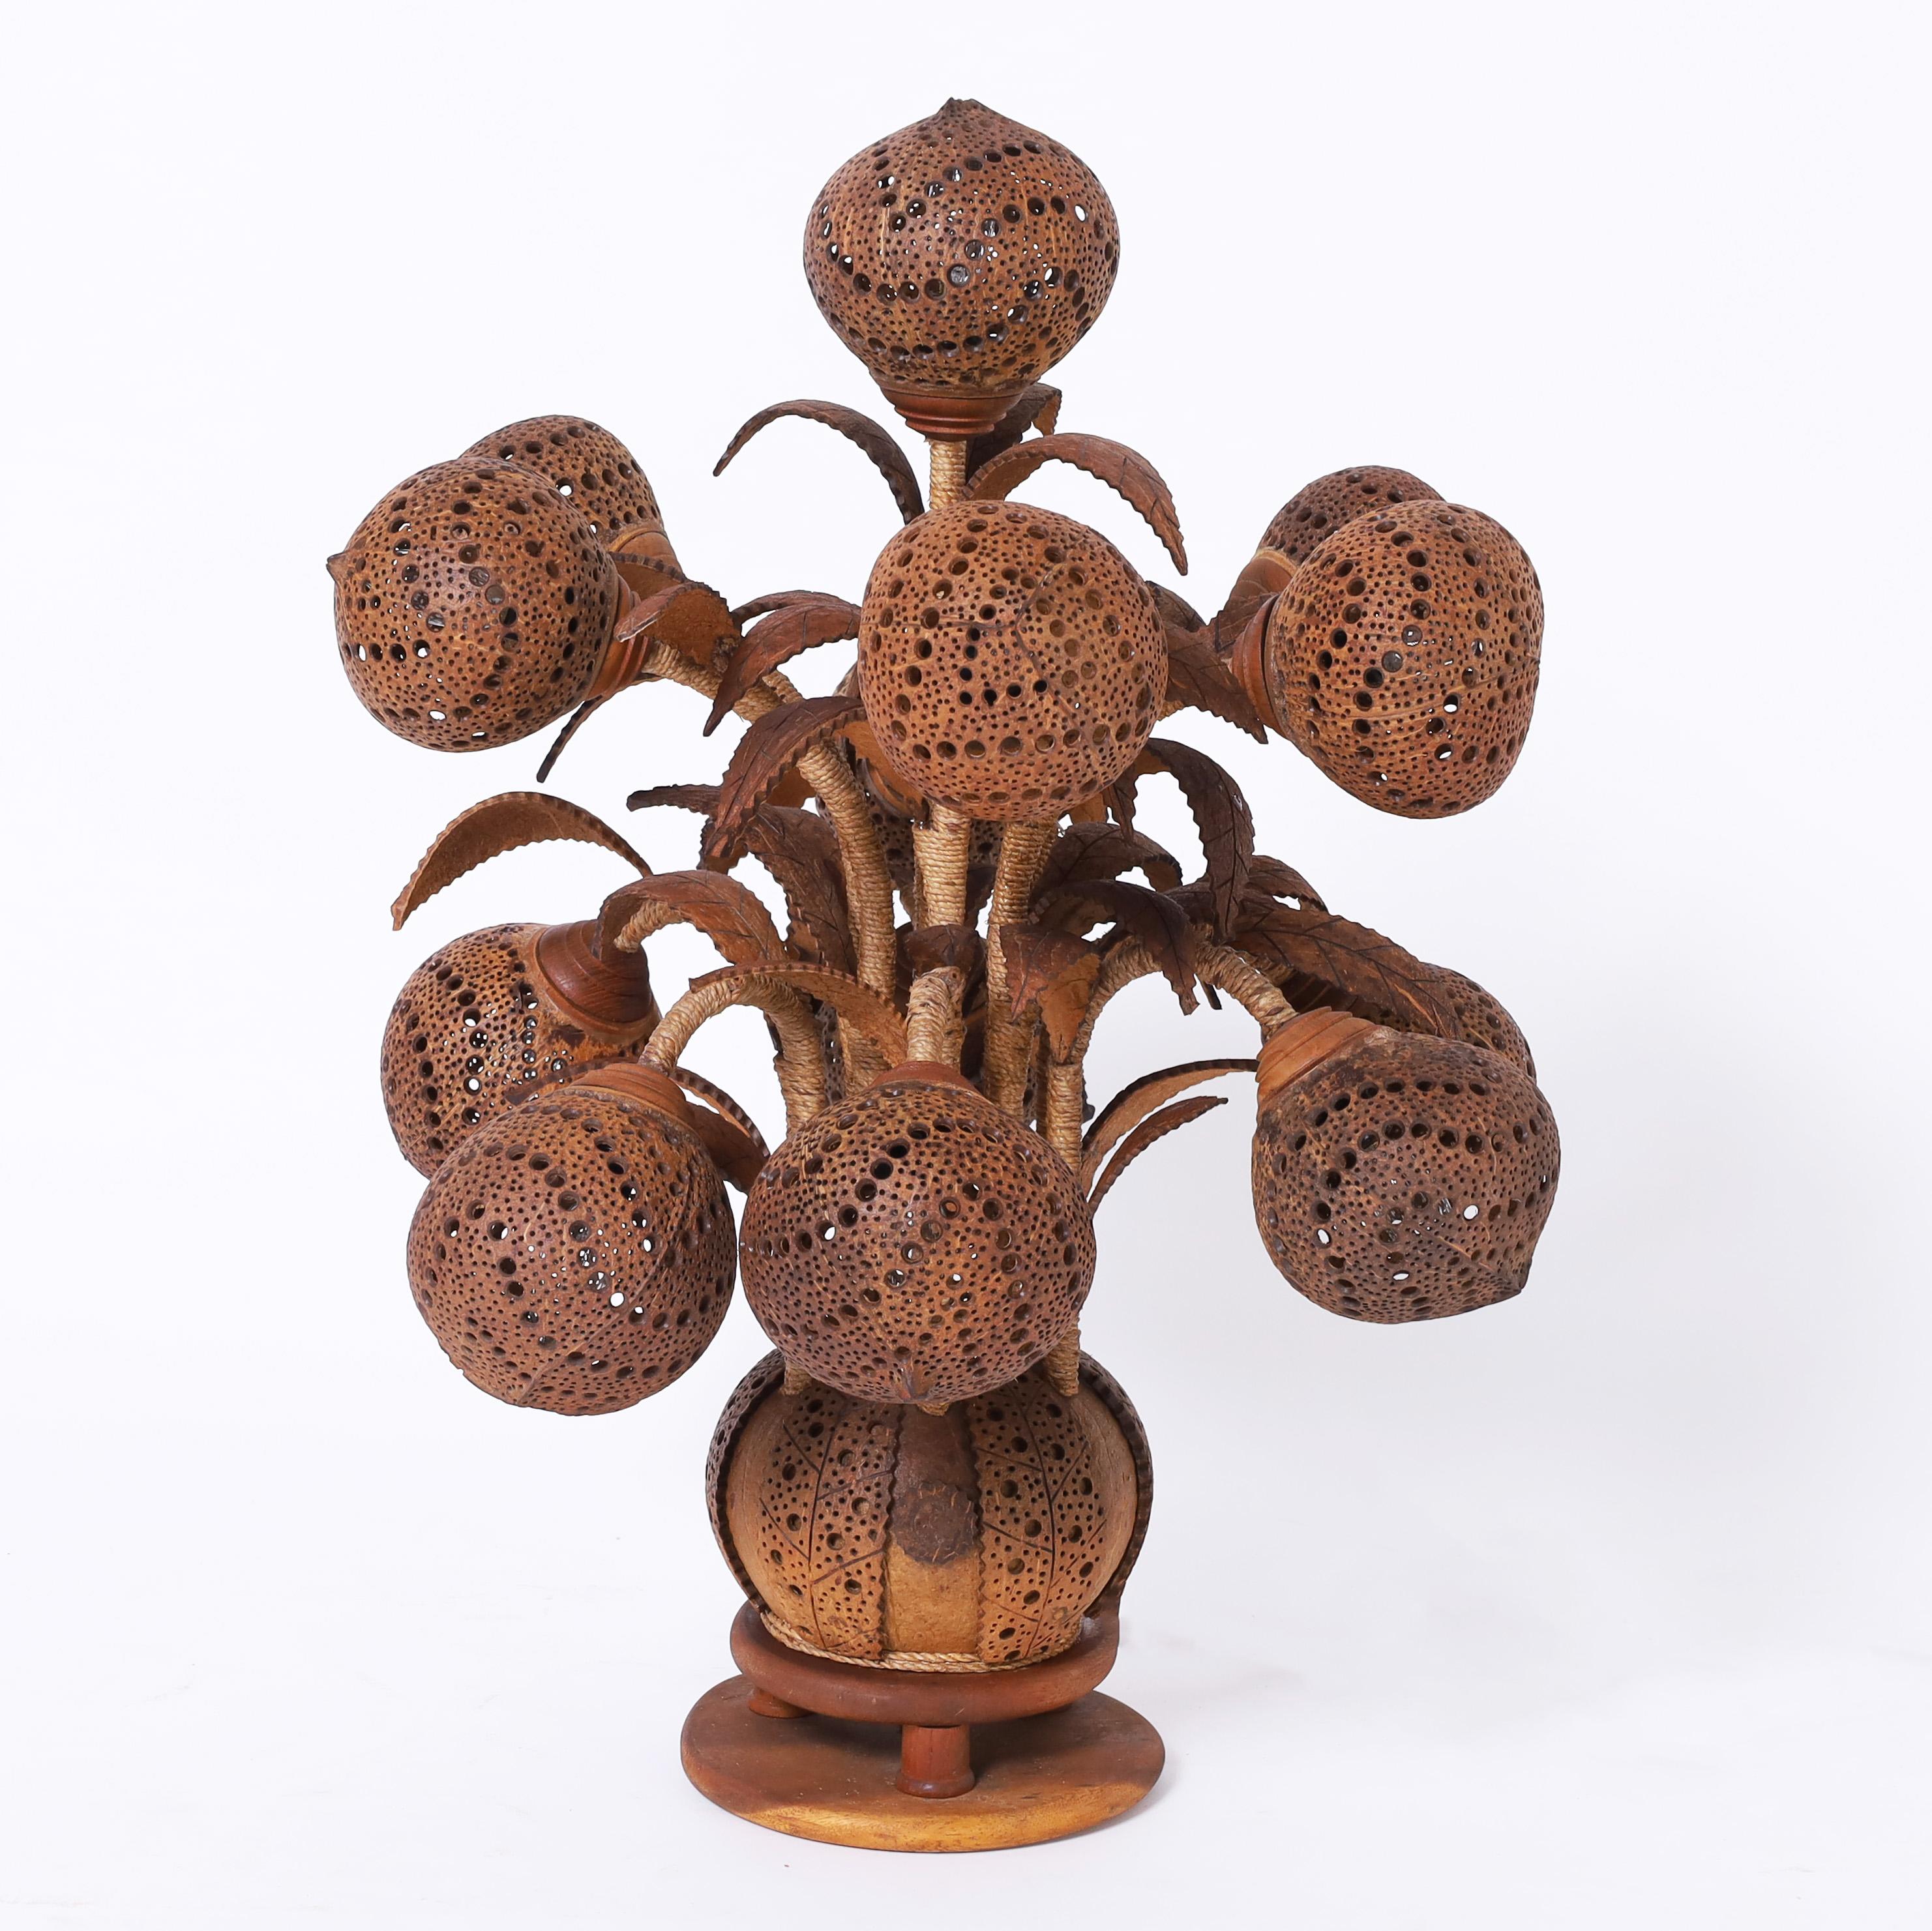 Lampe de table rare et inhabituelle, faite à la main, comportant treize coquilles de noix de coco sculptées et perforées en guise d'abat-jour, des feuilles de noix de coco sculptées, des tiges de corde enroulées à la main et une base en noix de coco